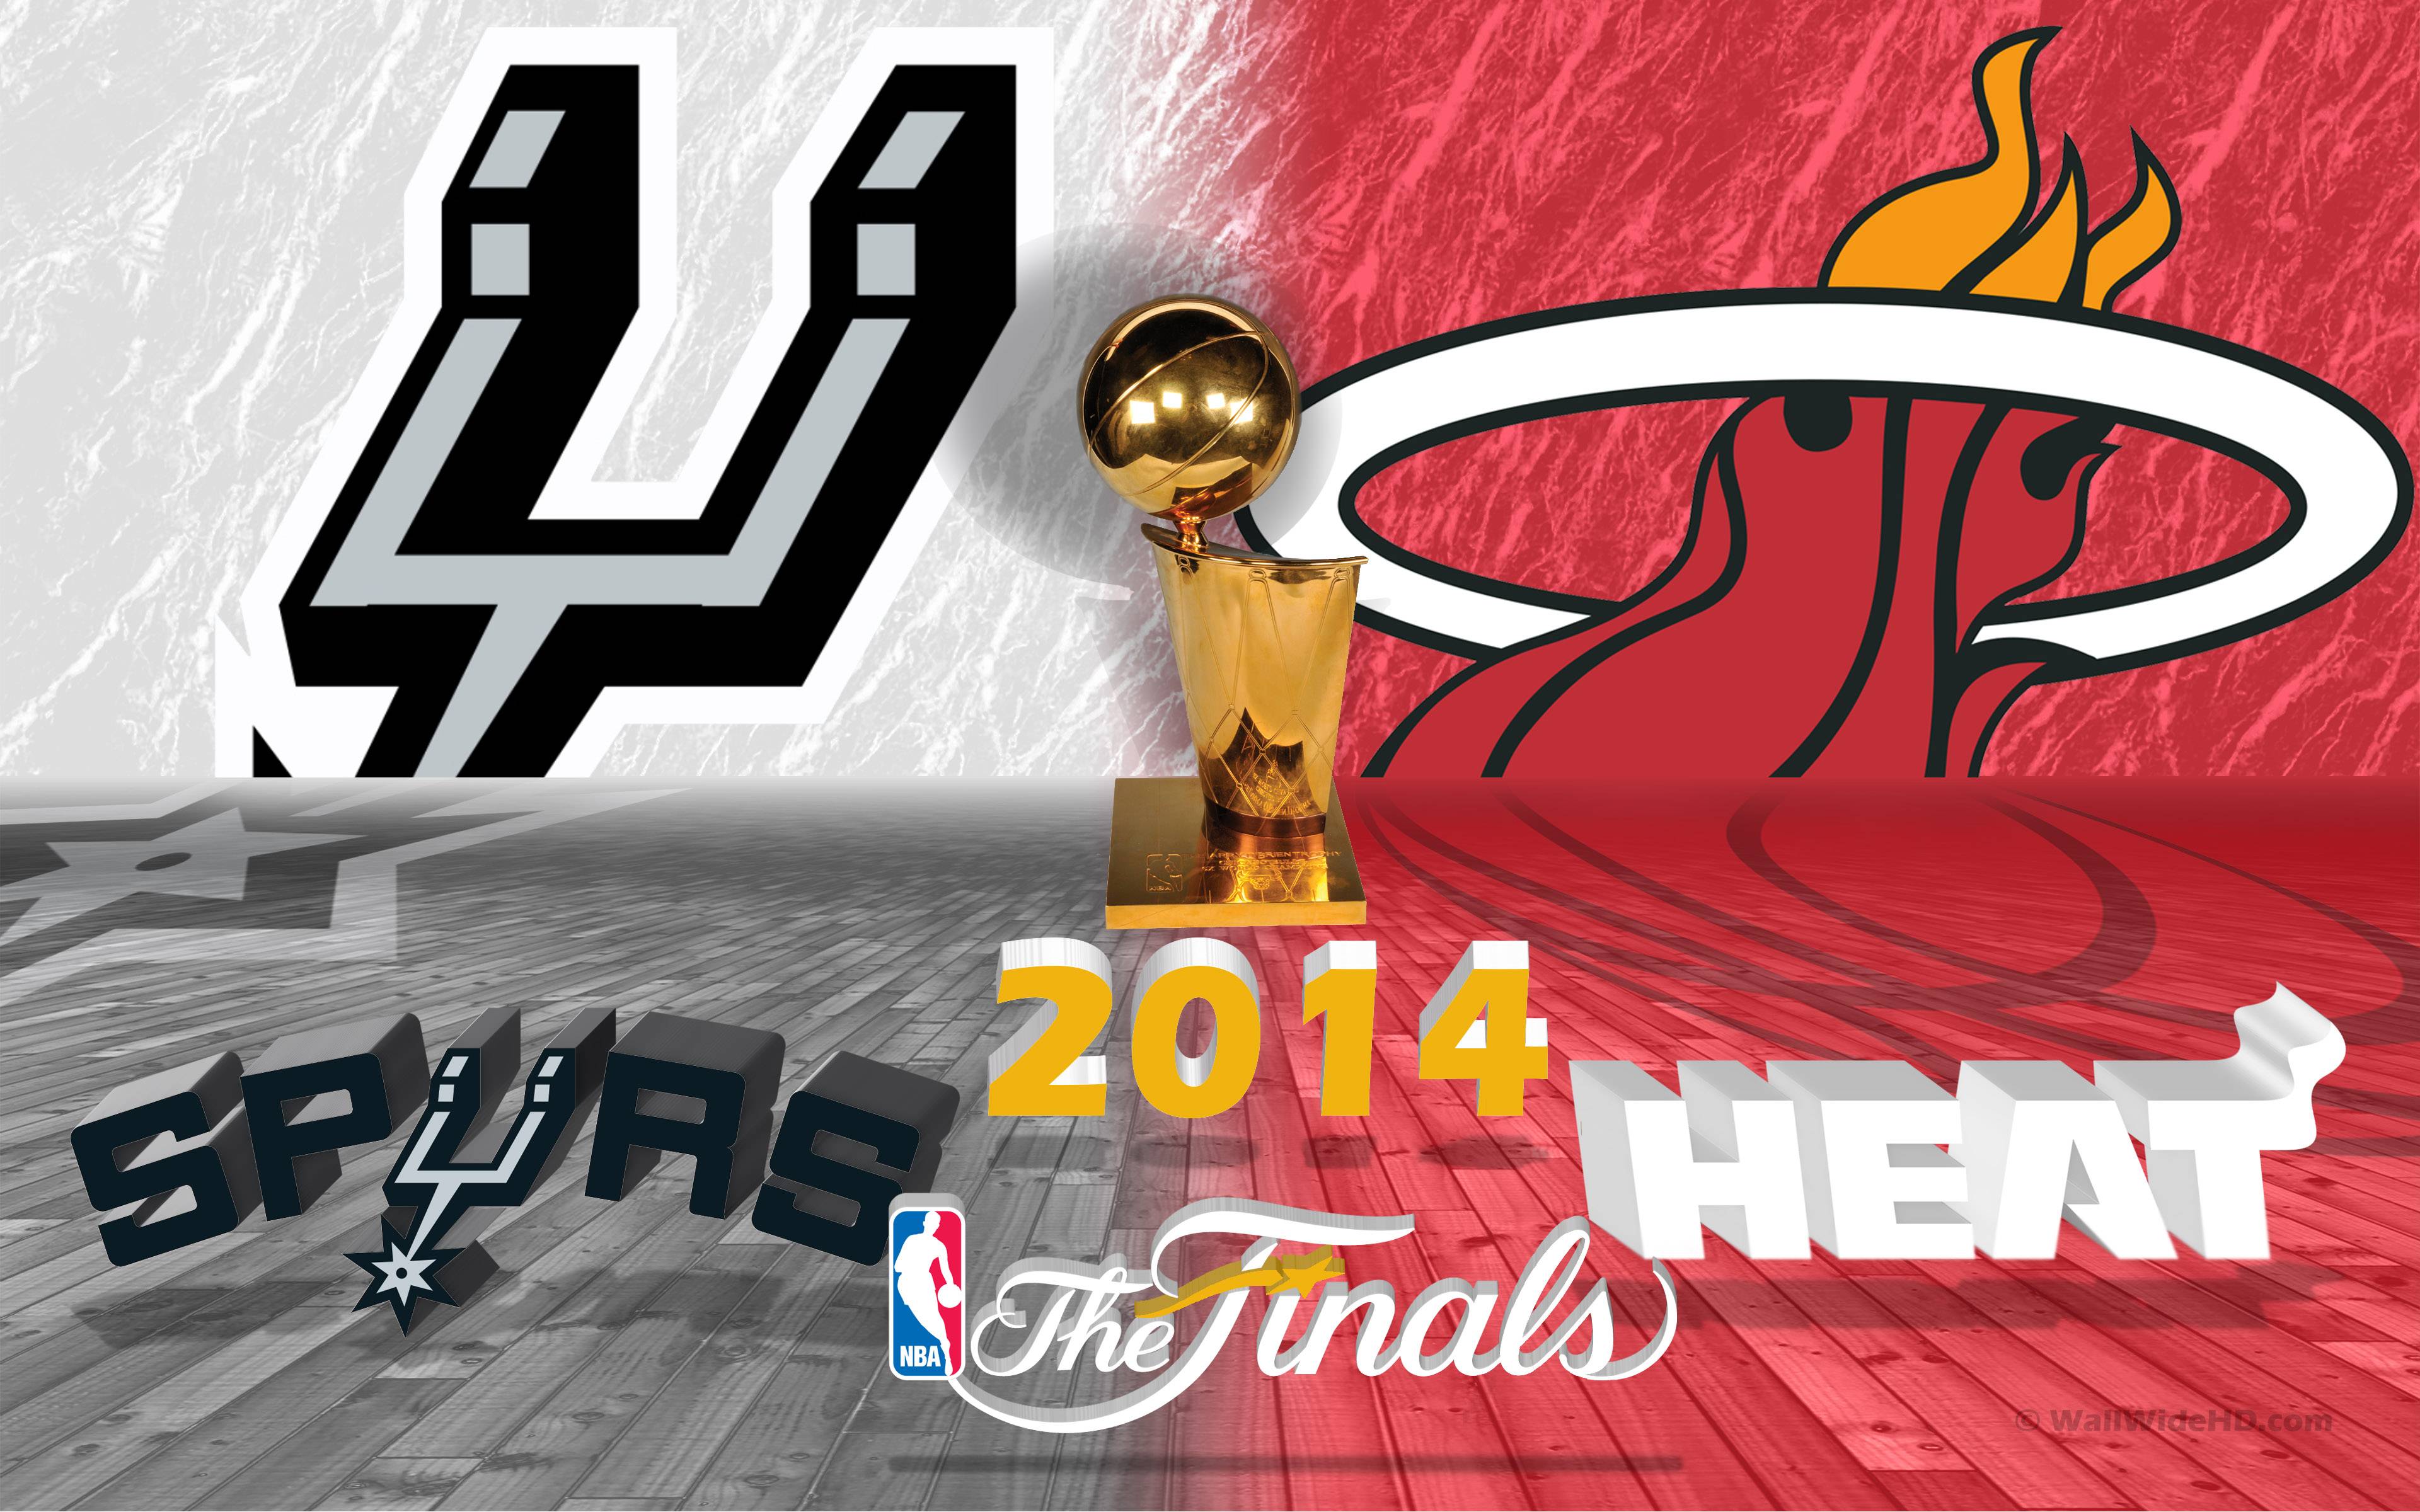 San Antonio Spurs v Miami Heat 2014 NBA Finals 3D Wallpaper Wide